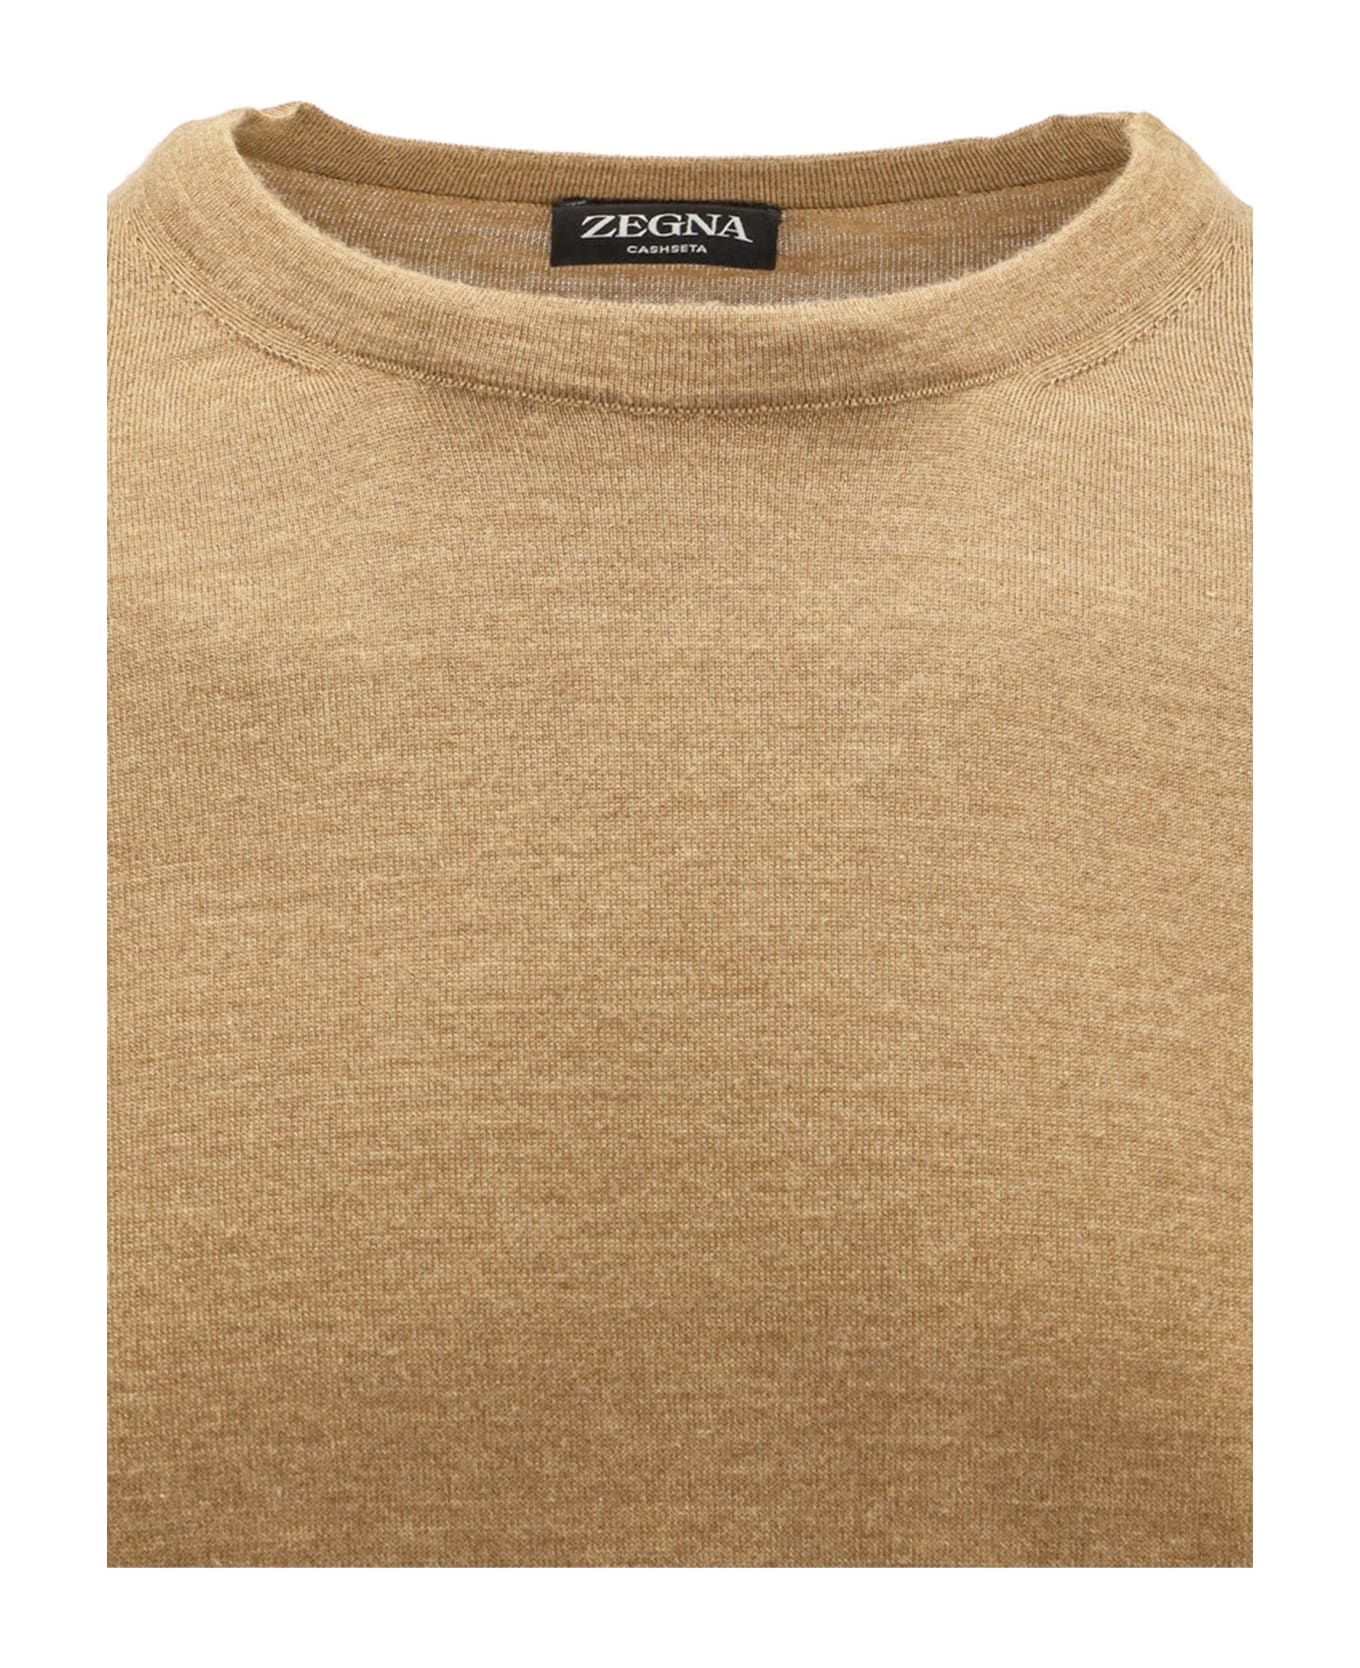 Zegna Sweater - Brown ニットウェア